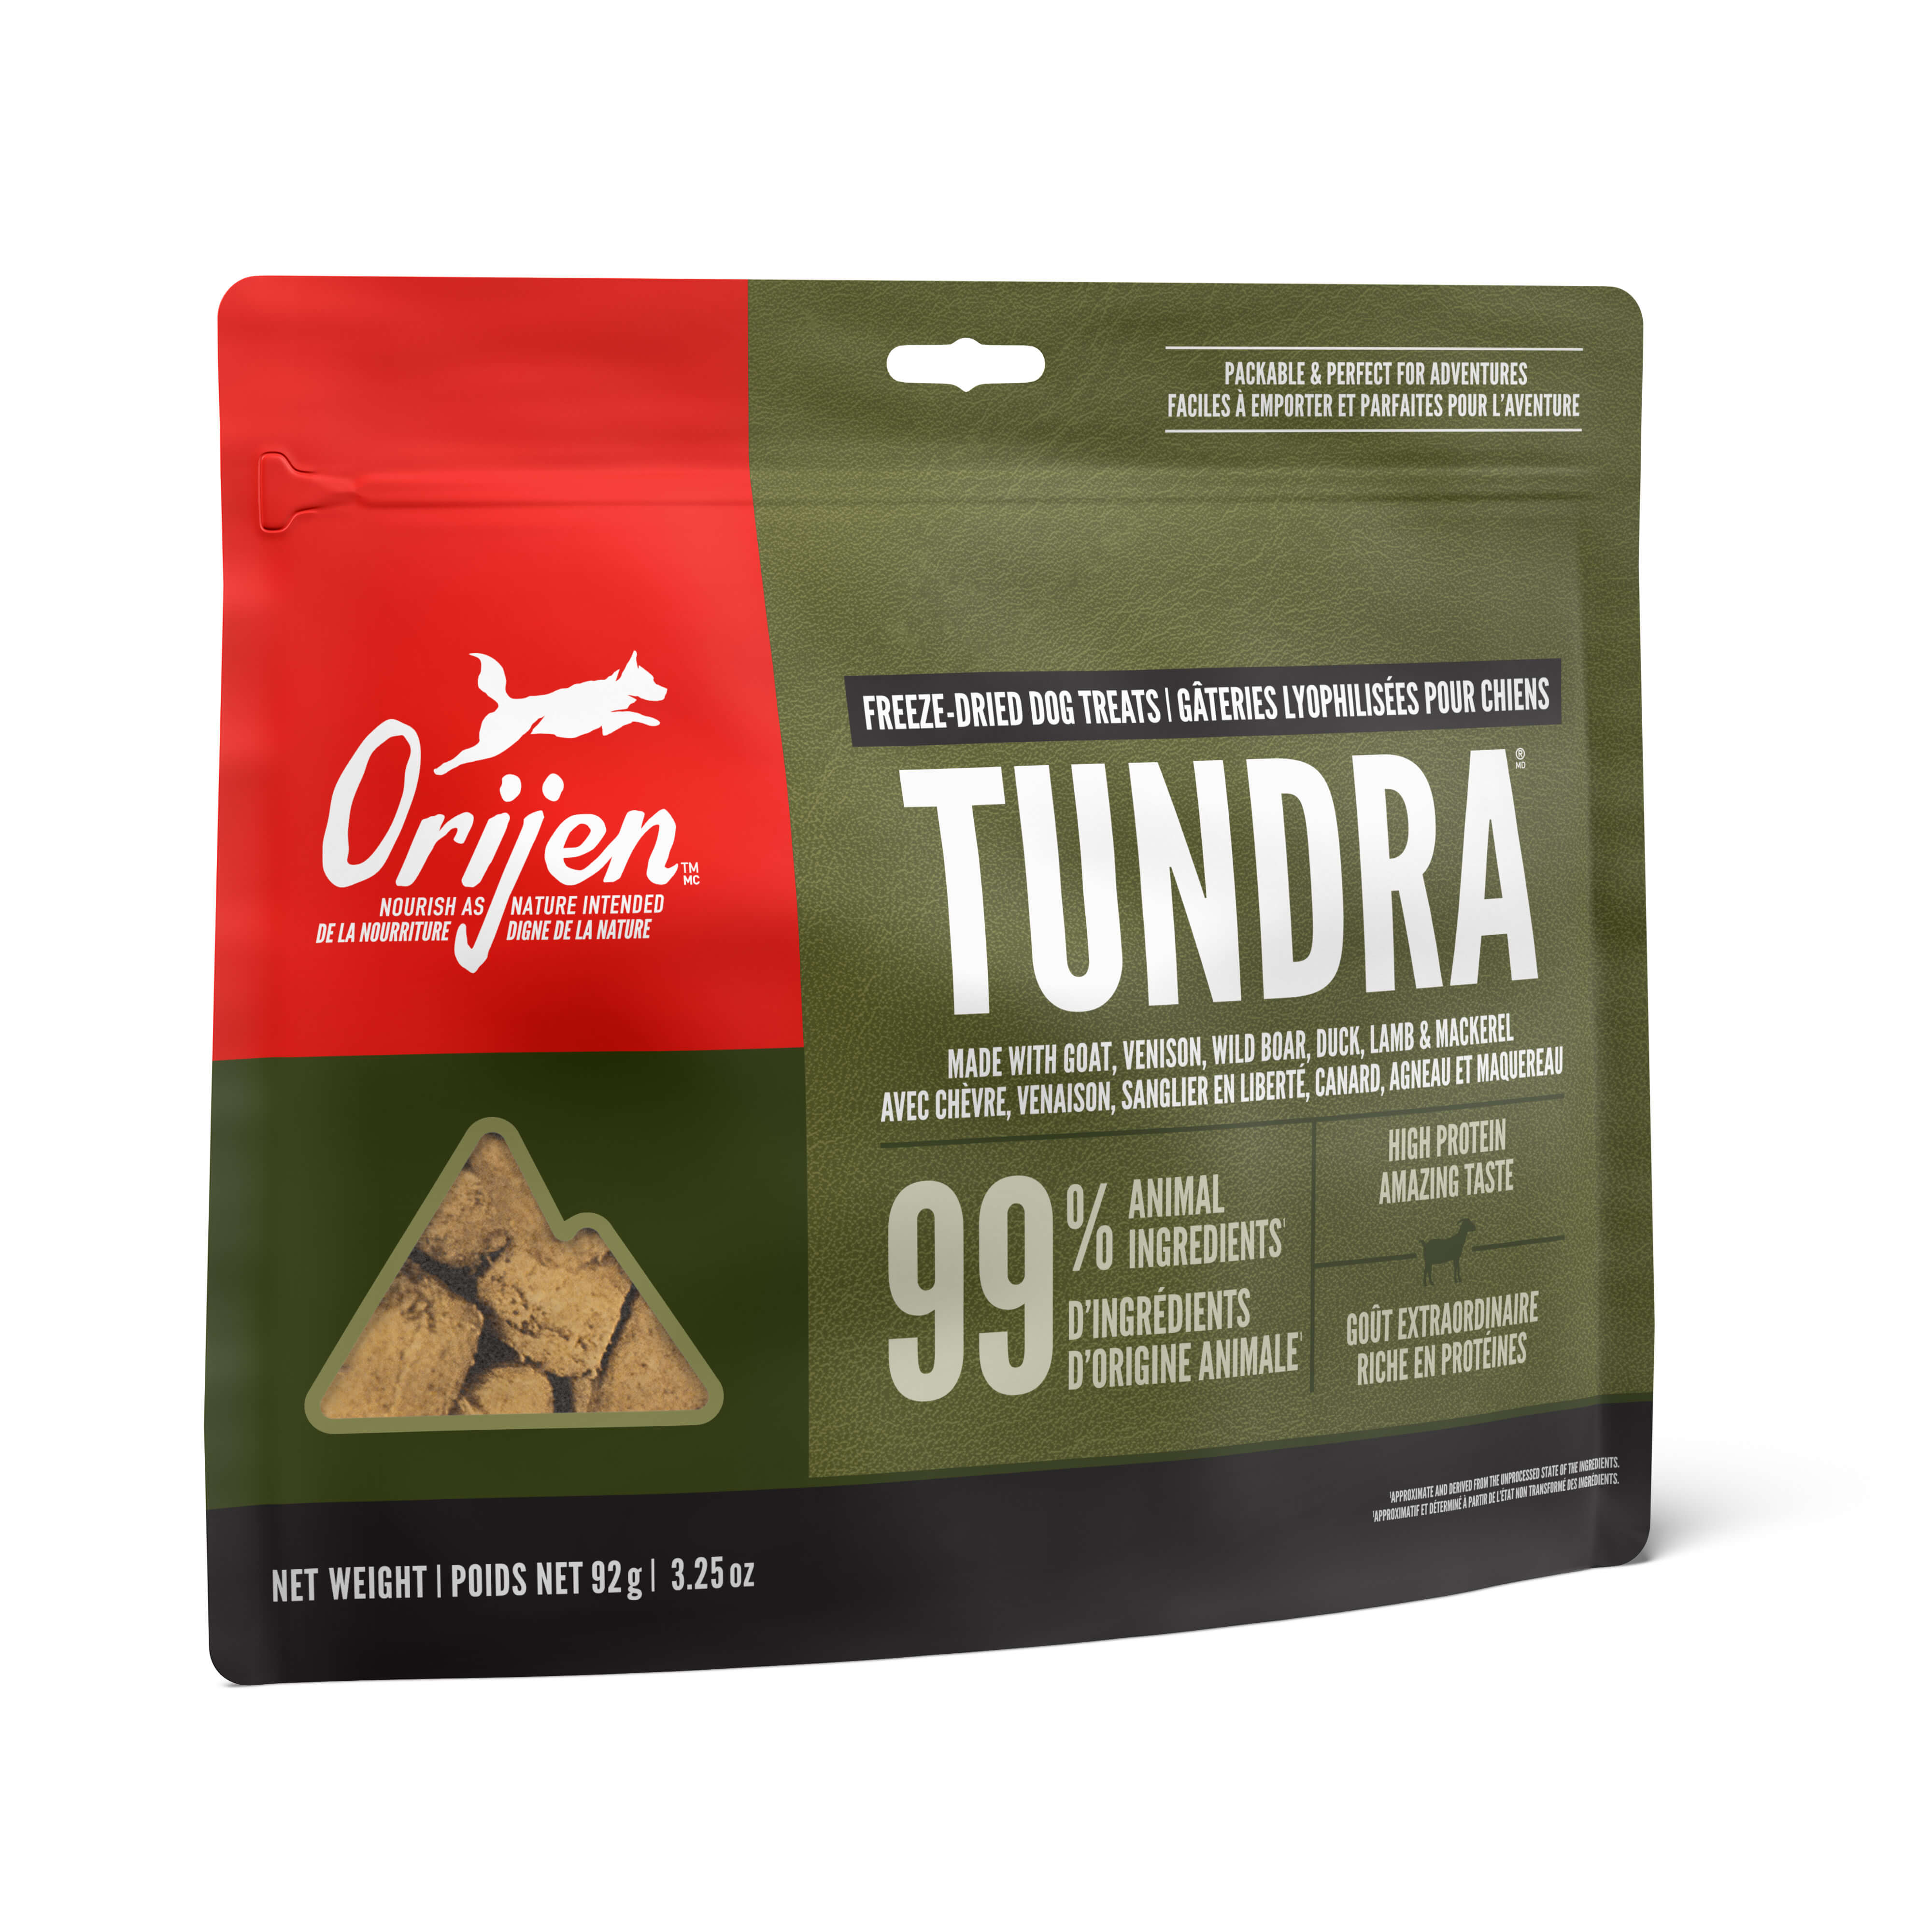 Orijen - Tundra Freeze-Dried Dog Treats (For Dogs)